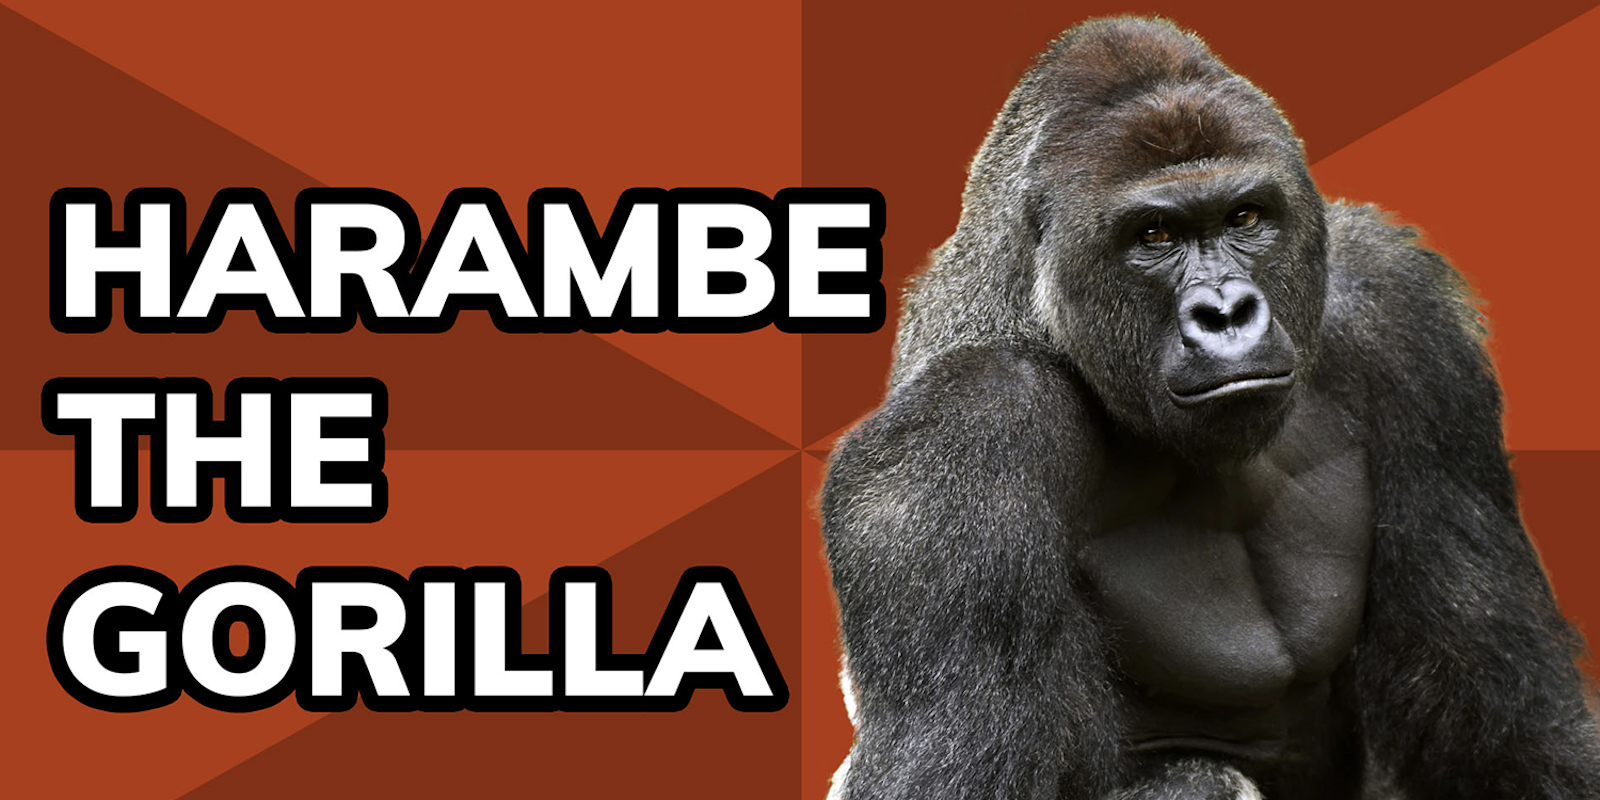 harambe the gorilla meme history